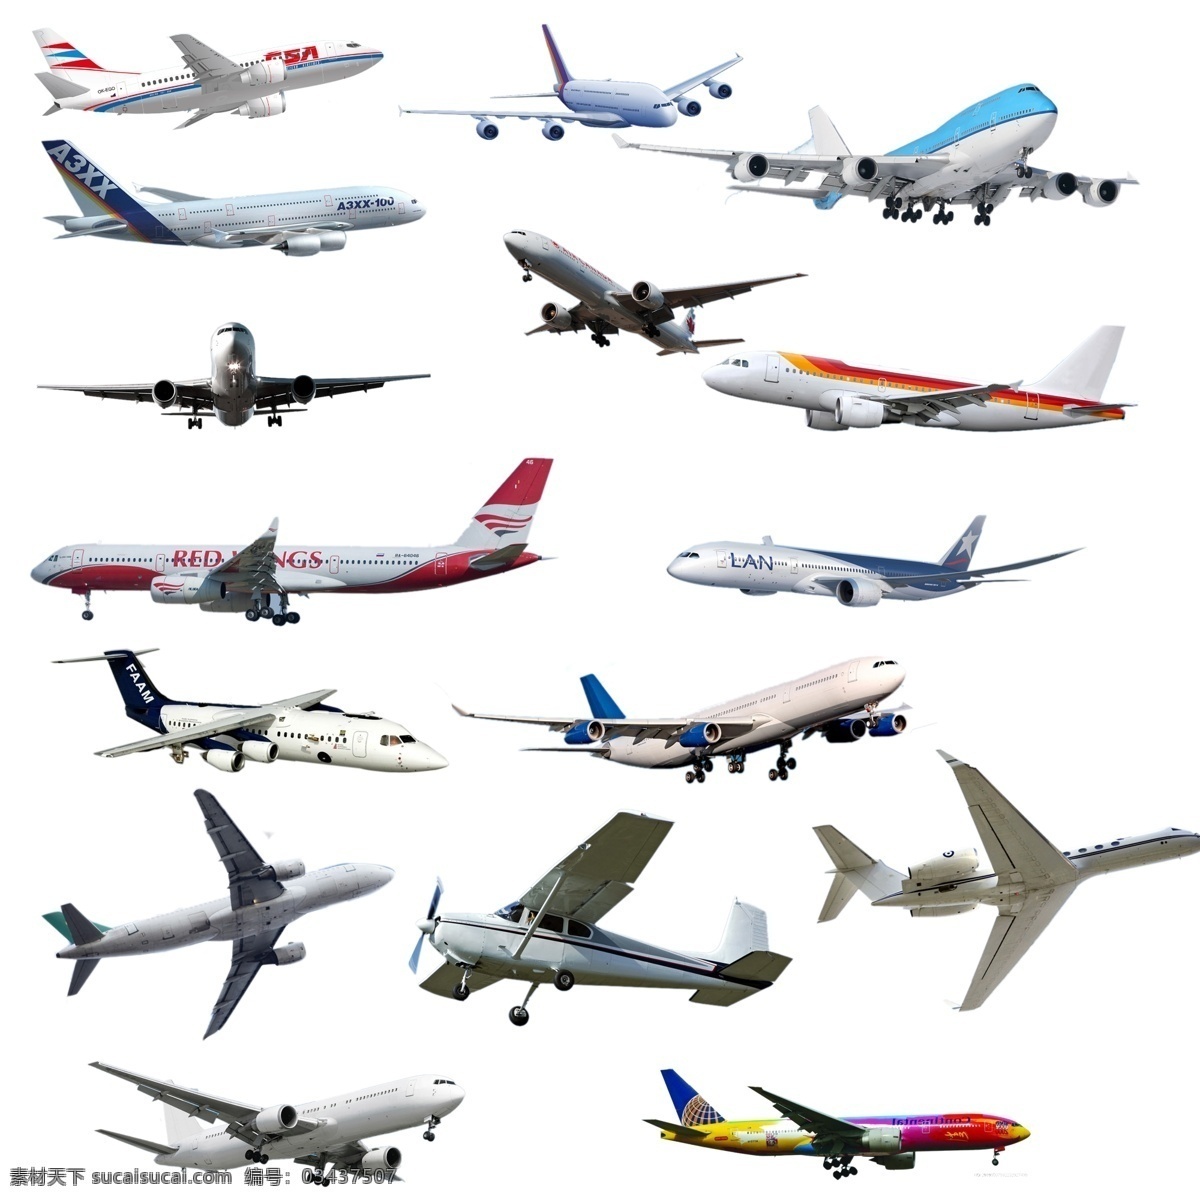 机 客机 螺旋桨飞机 喷气式飞机 老式飞机 交通工具 交通 直升飞机 飞机大全 各种飞机